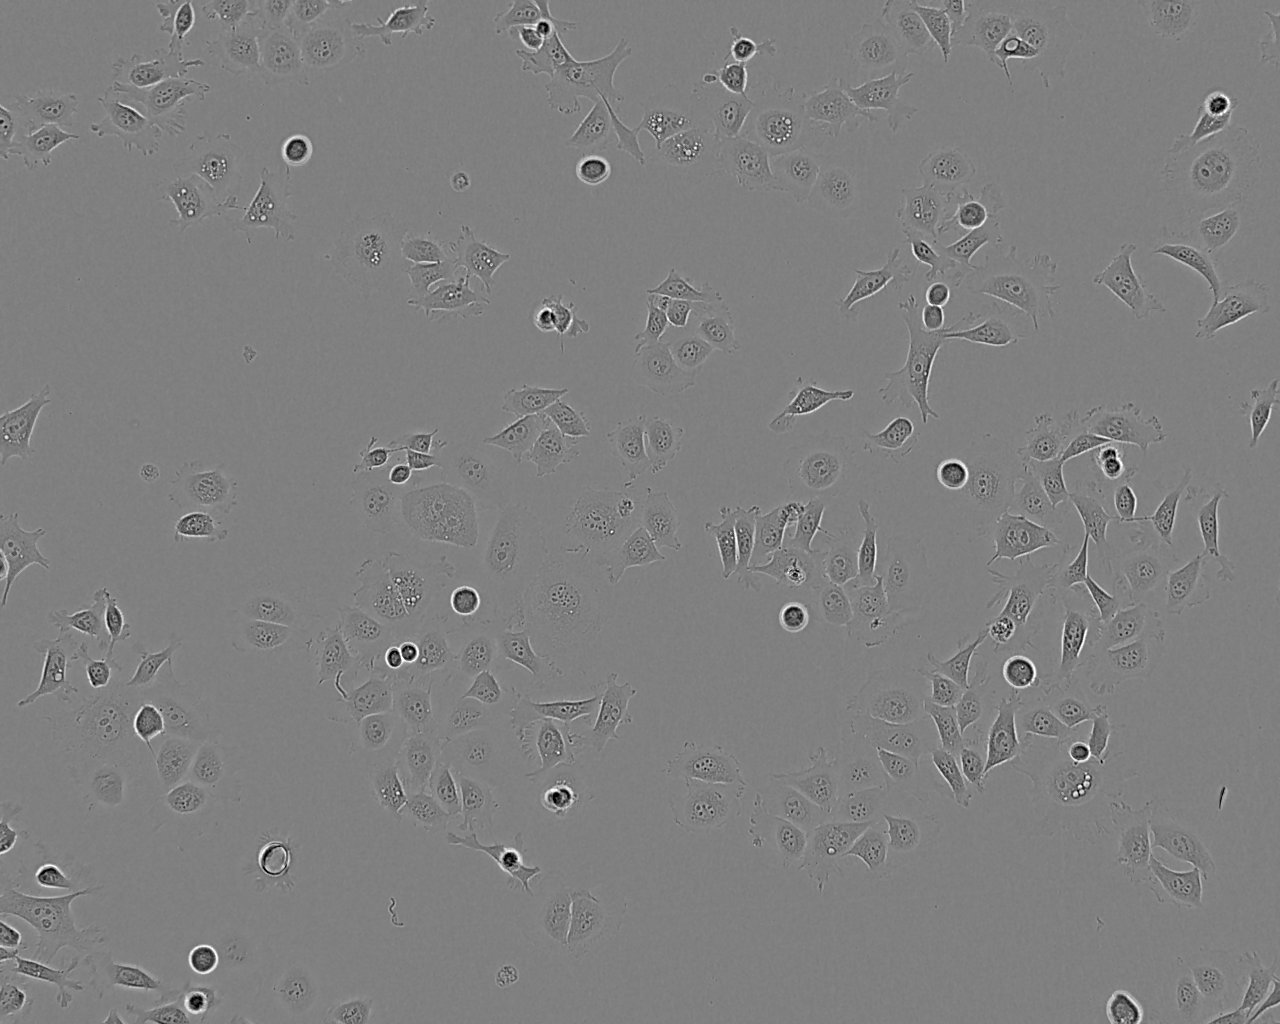 GL261 Cells|小鼠胶质瘤细胞系